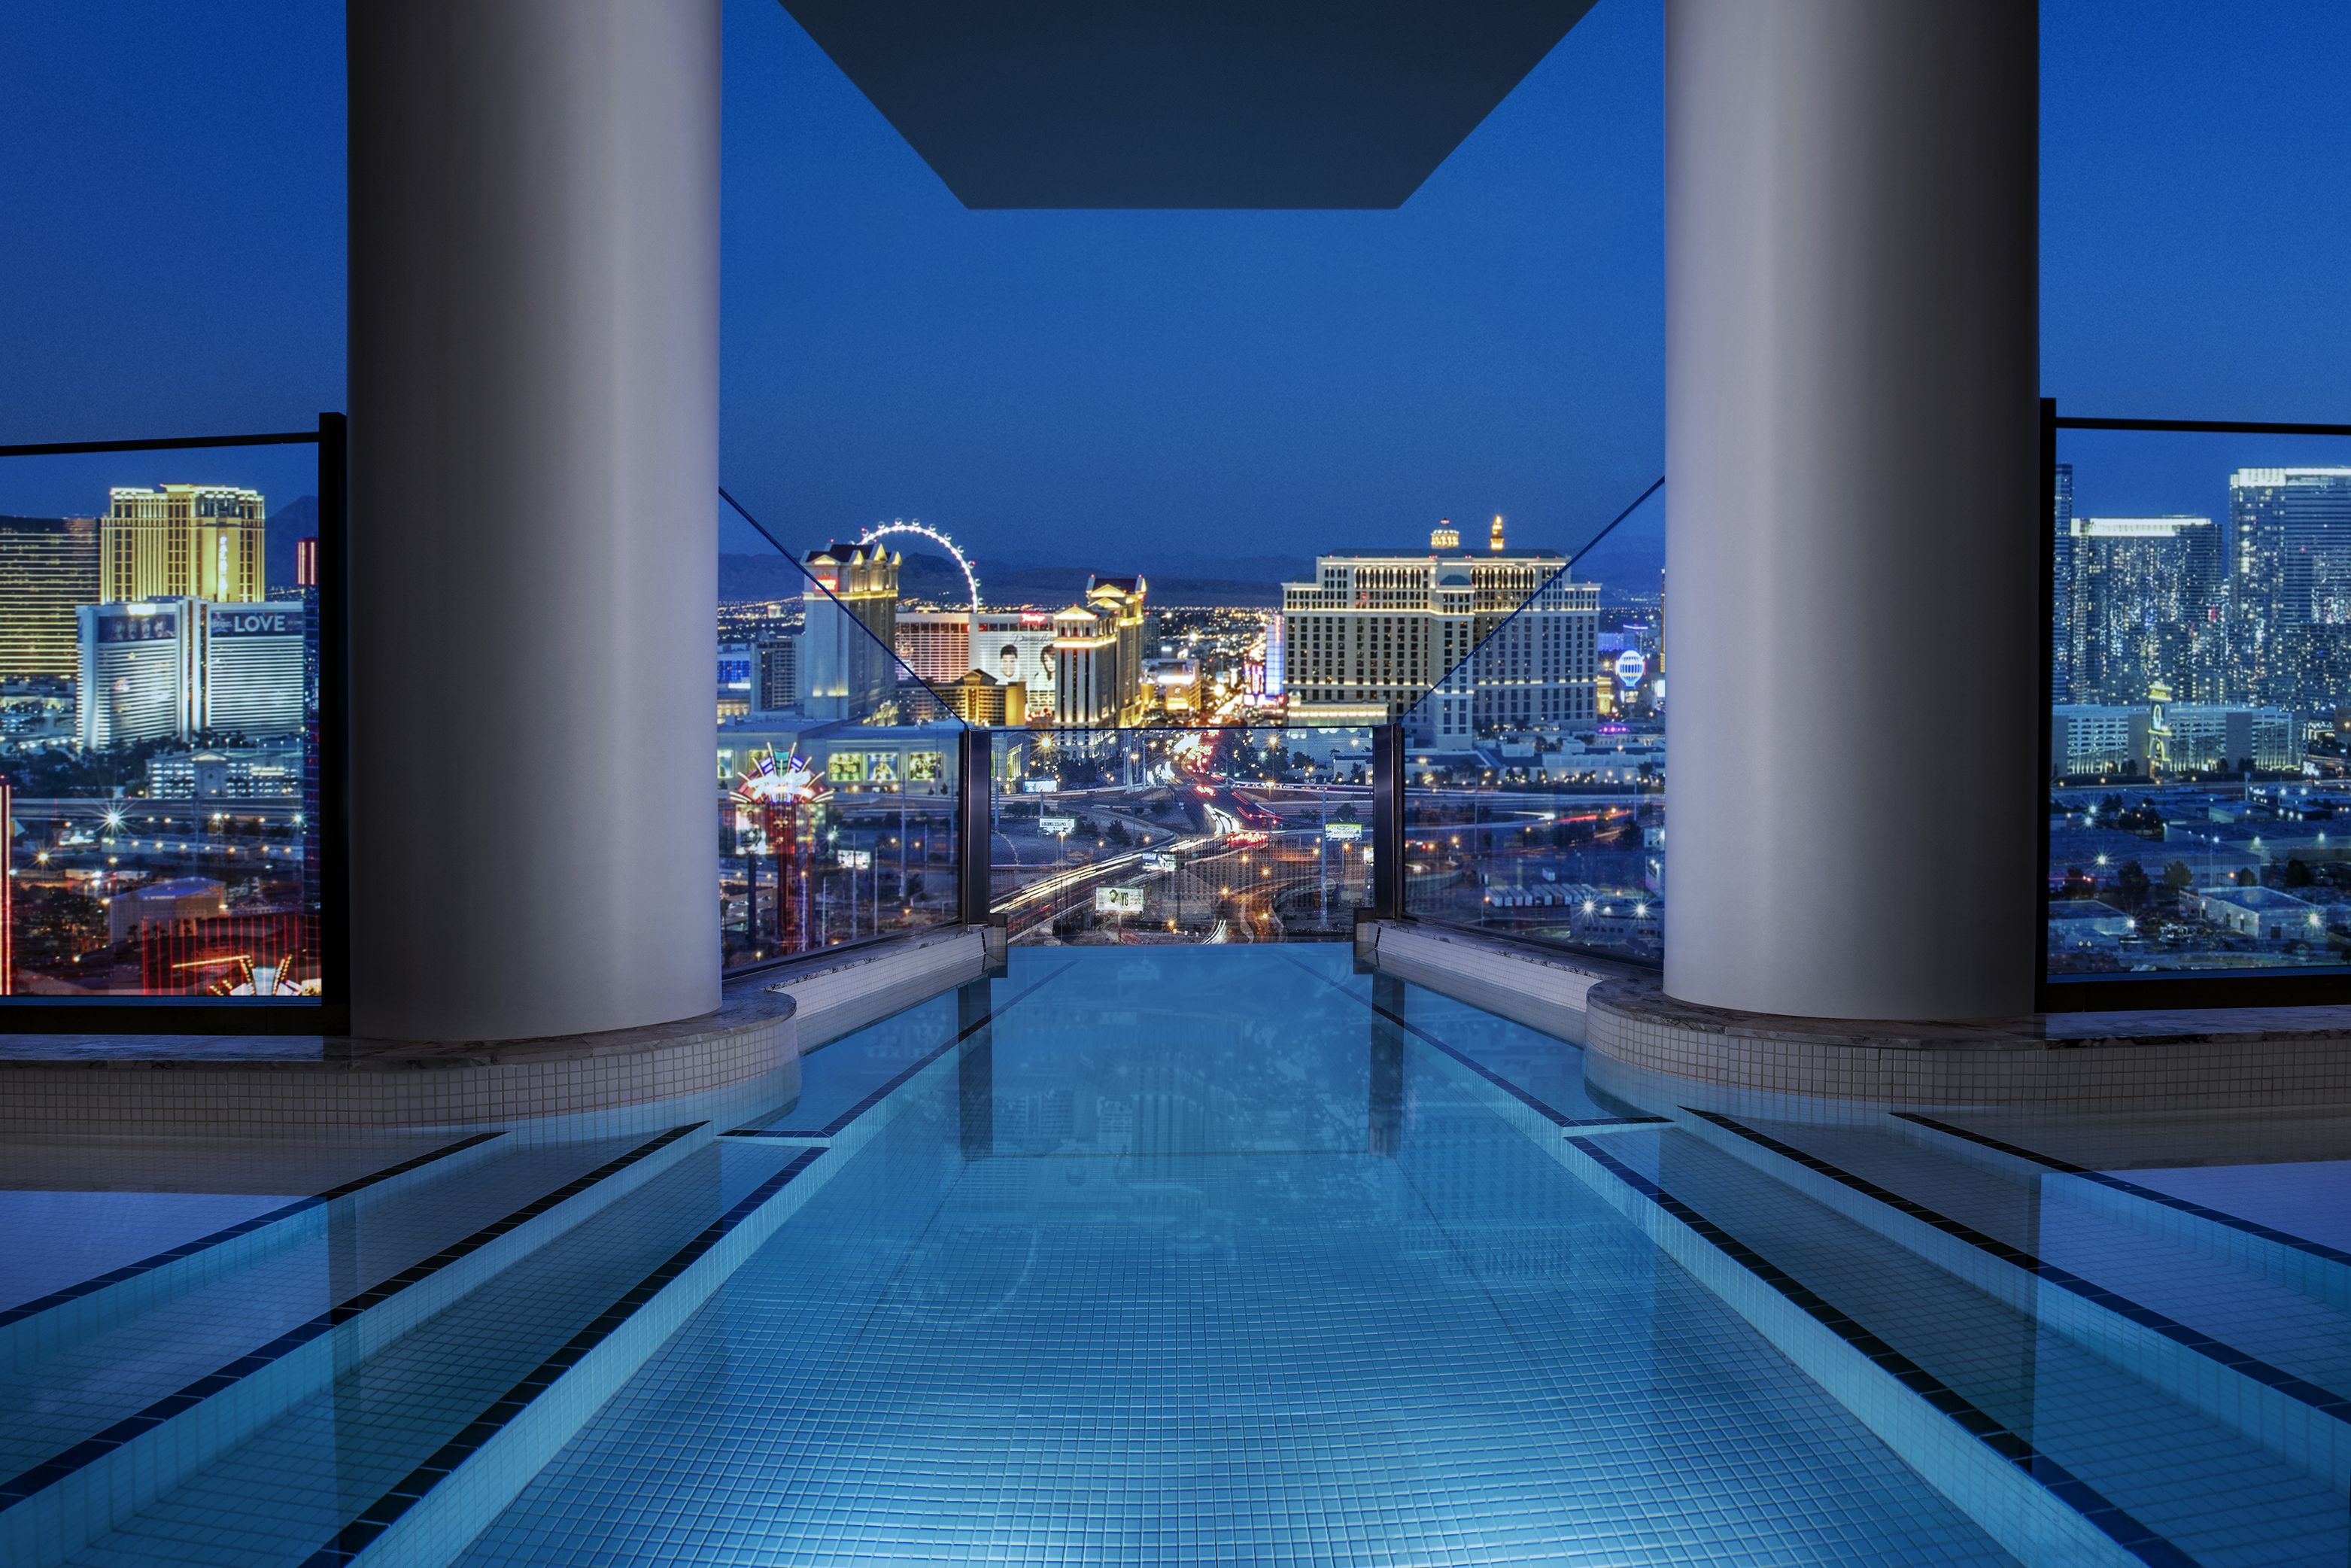 Hotels in Las Vegas with Pools, Las Vegas, NV, Hotel Rooms, Las Vegas  Hotel with Pools